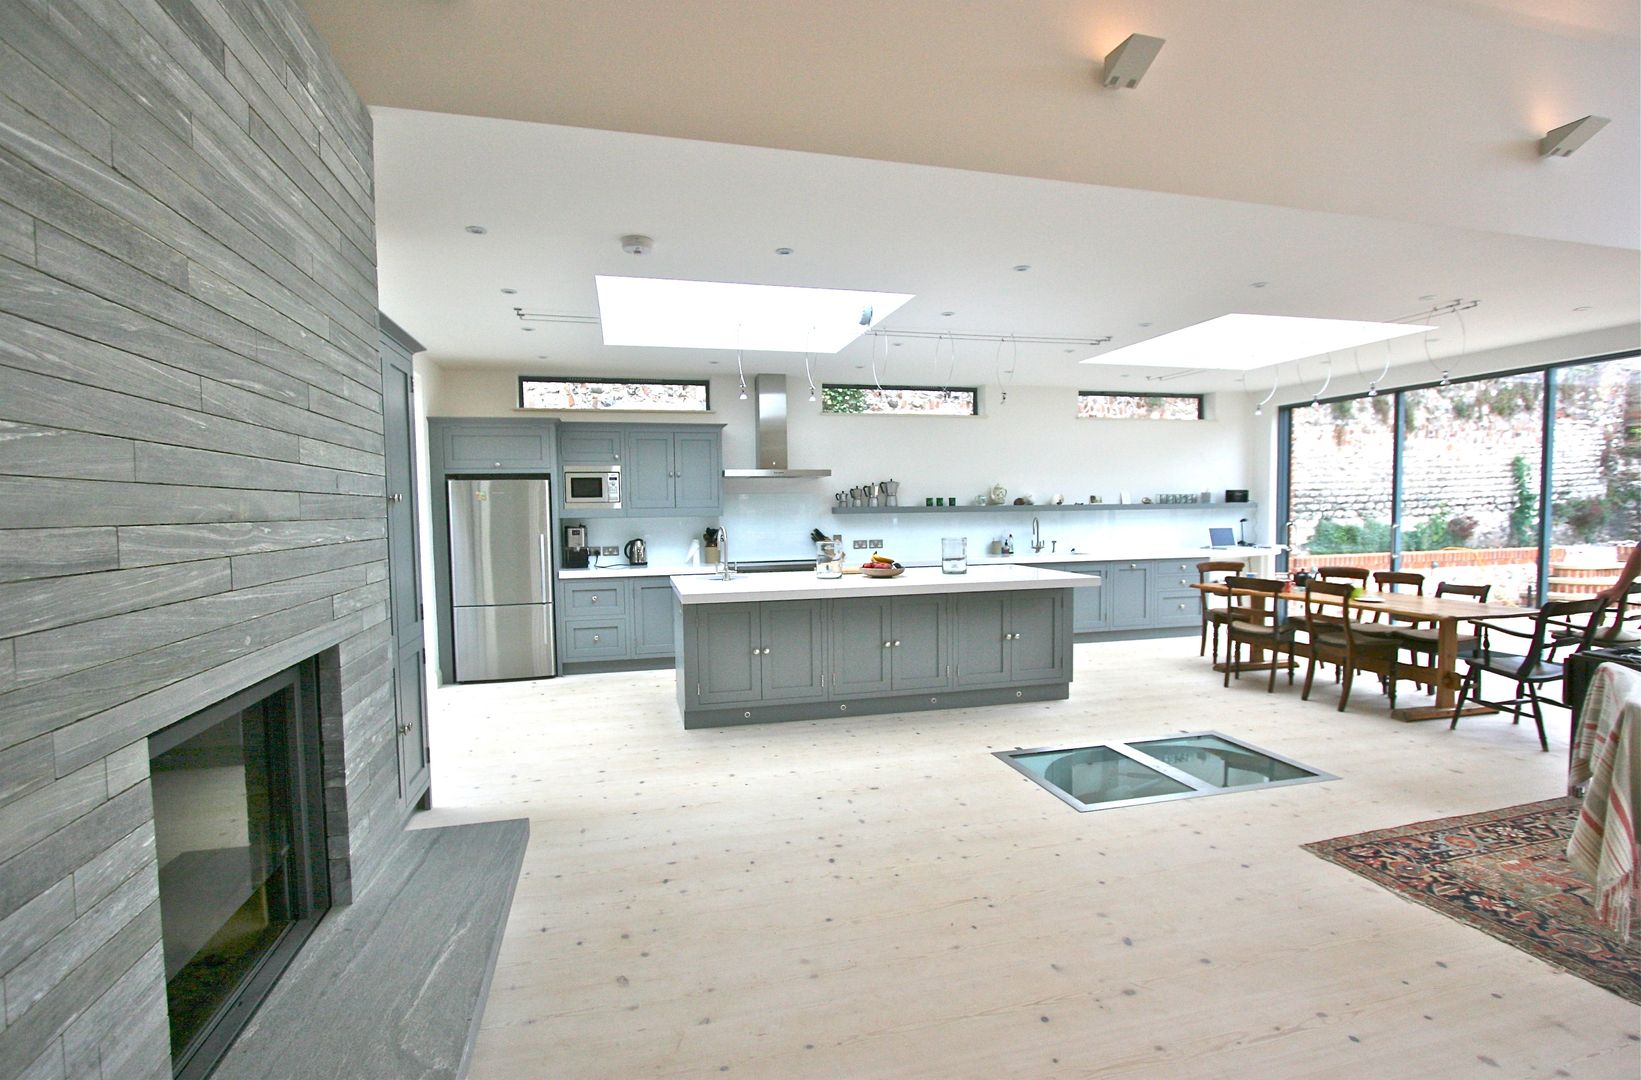 Brancaster, North Norfolk, UK Laura Gompertz Interiors Ltd Klasik Mutfak grey kitchen,kitchen island,island,contemporary kitchen,modern kitchen,large kitchen,grey and white,white worktop